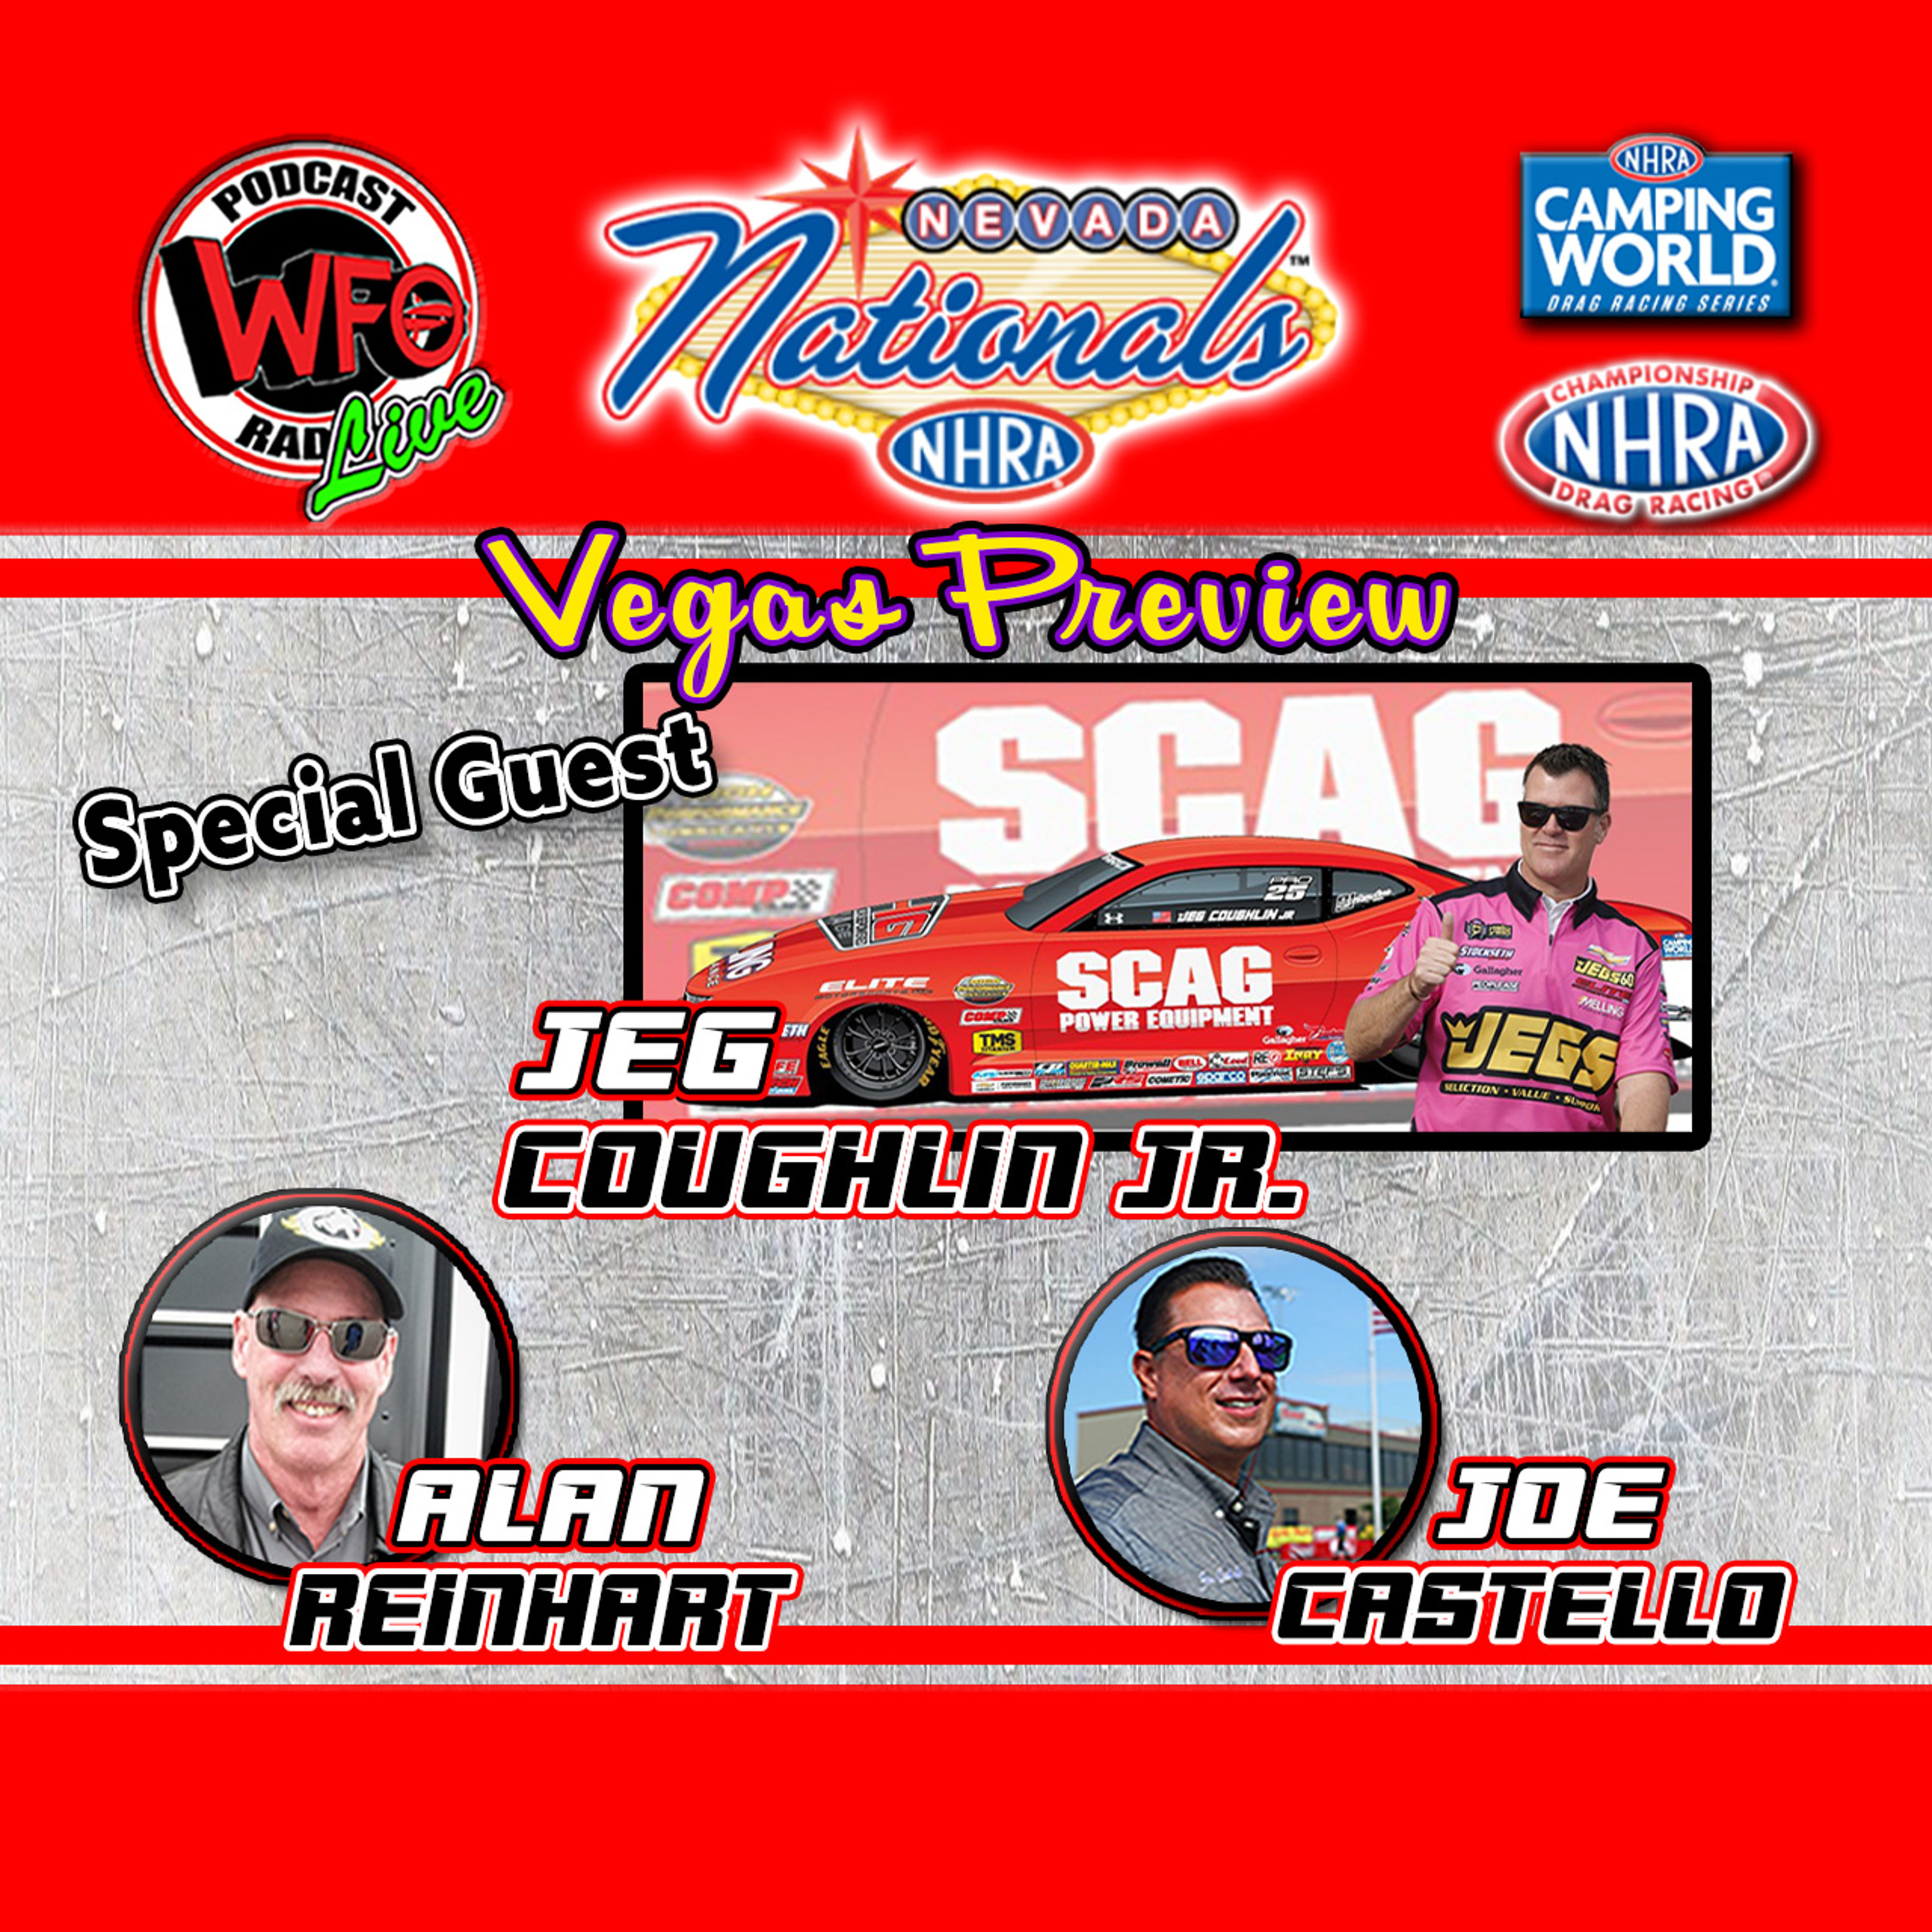 Nevada NHRA Nationals preview! Jeg Coughlin Jr. joins Joe Castello and Alan Reinhart